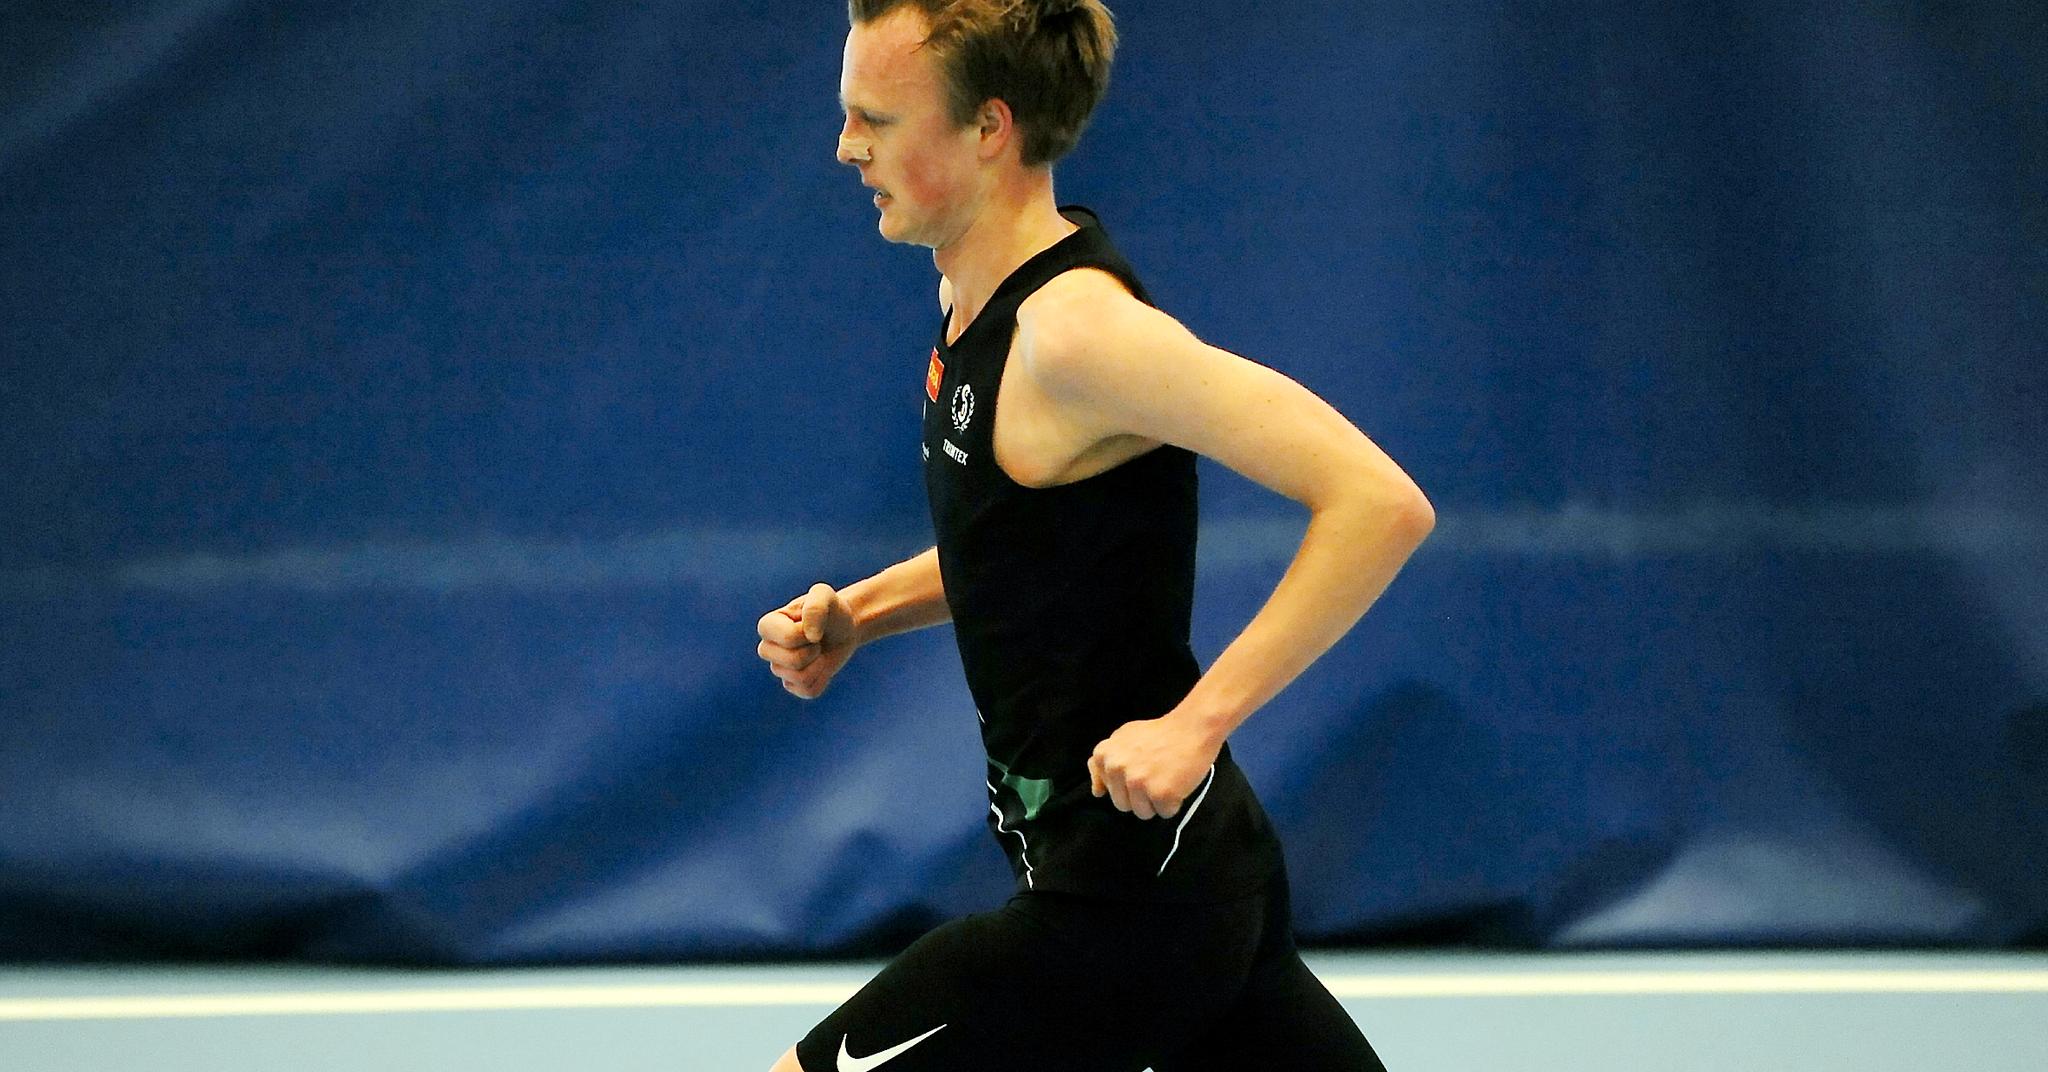 Narve Gilje Nordås ble løpende helt alene i store deler av løpet, men det forhindret han ikke i å løpe inn til norsk årsbeste innendørs på 3000 meter.